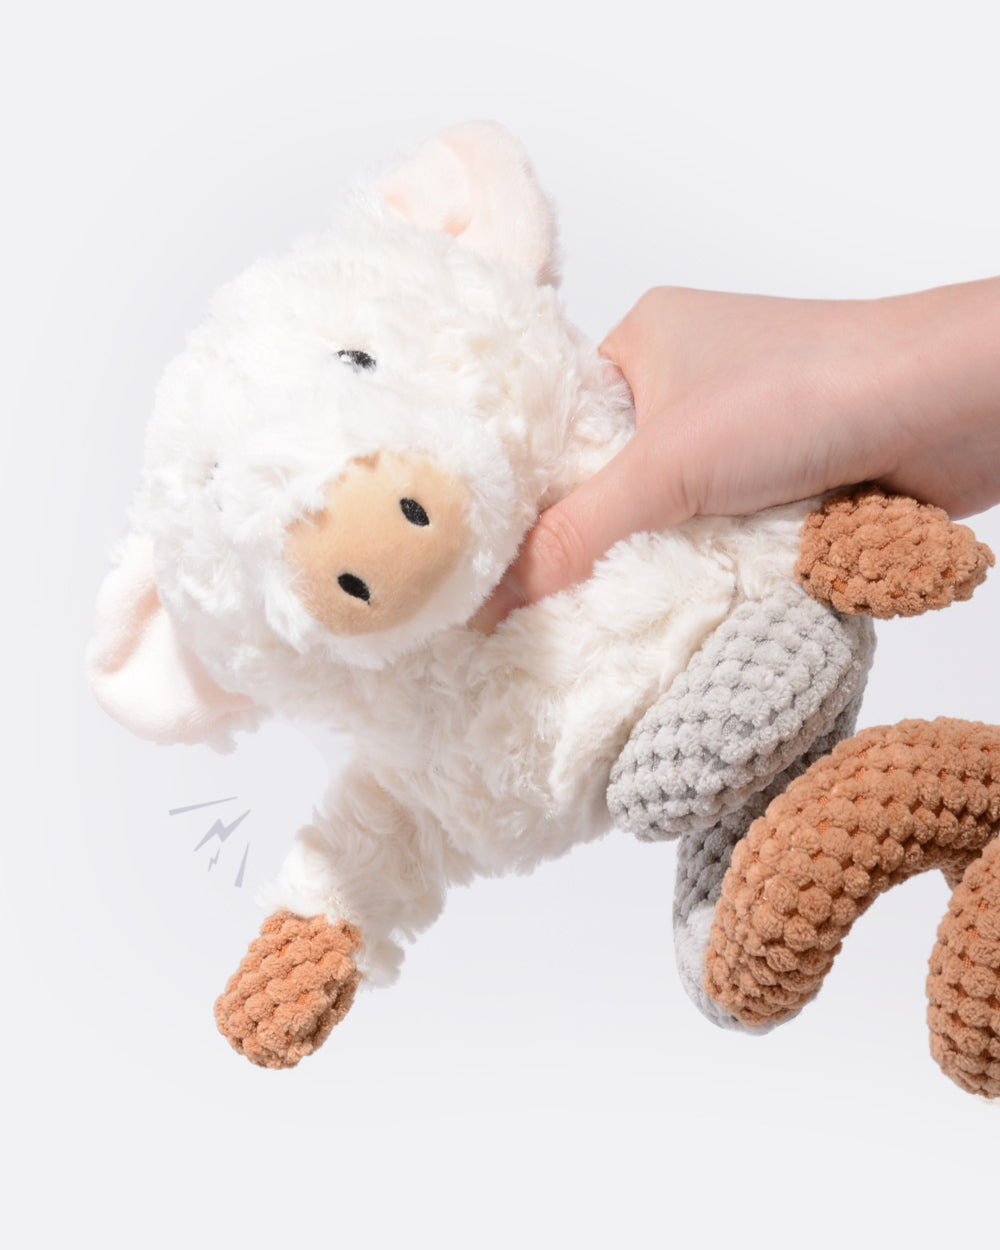 毛絨吱吱作響的繩索玩具 - 捲捲豬